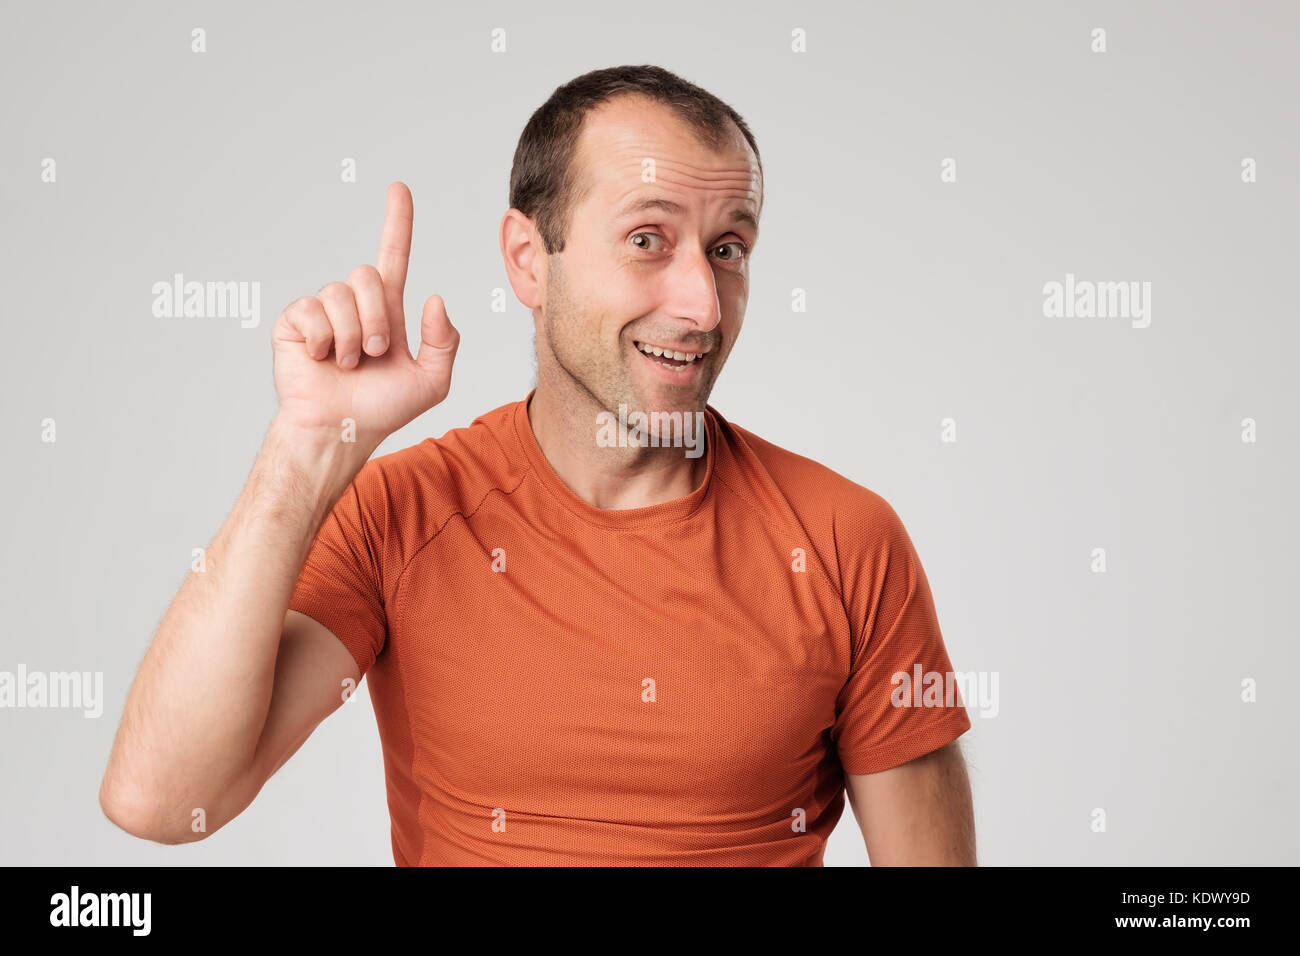 Mature hispanic man showing upwards index finger. Stock Photo